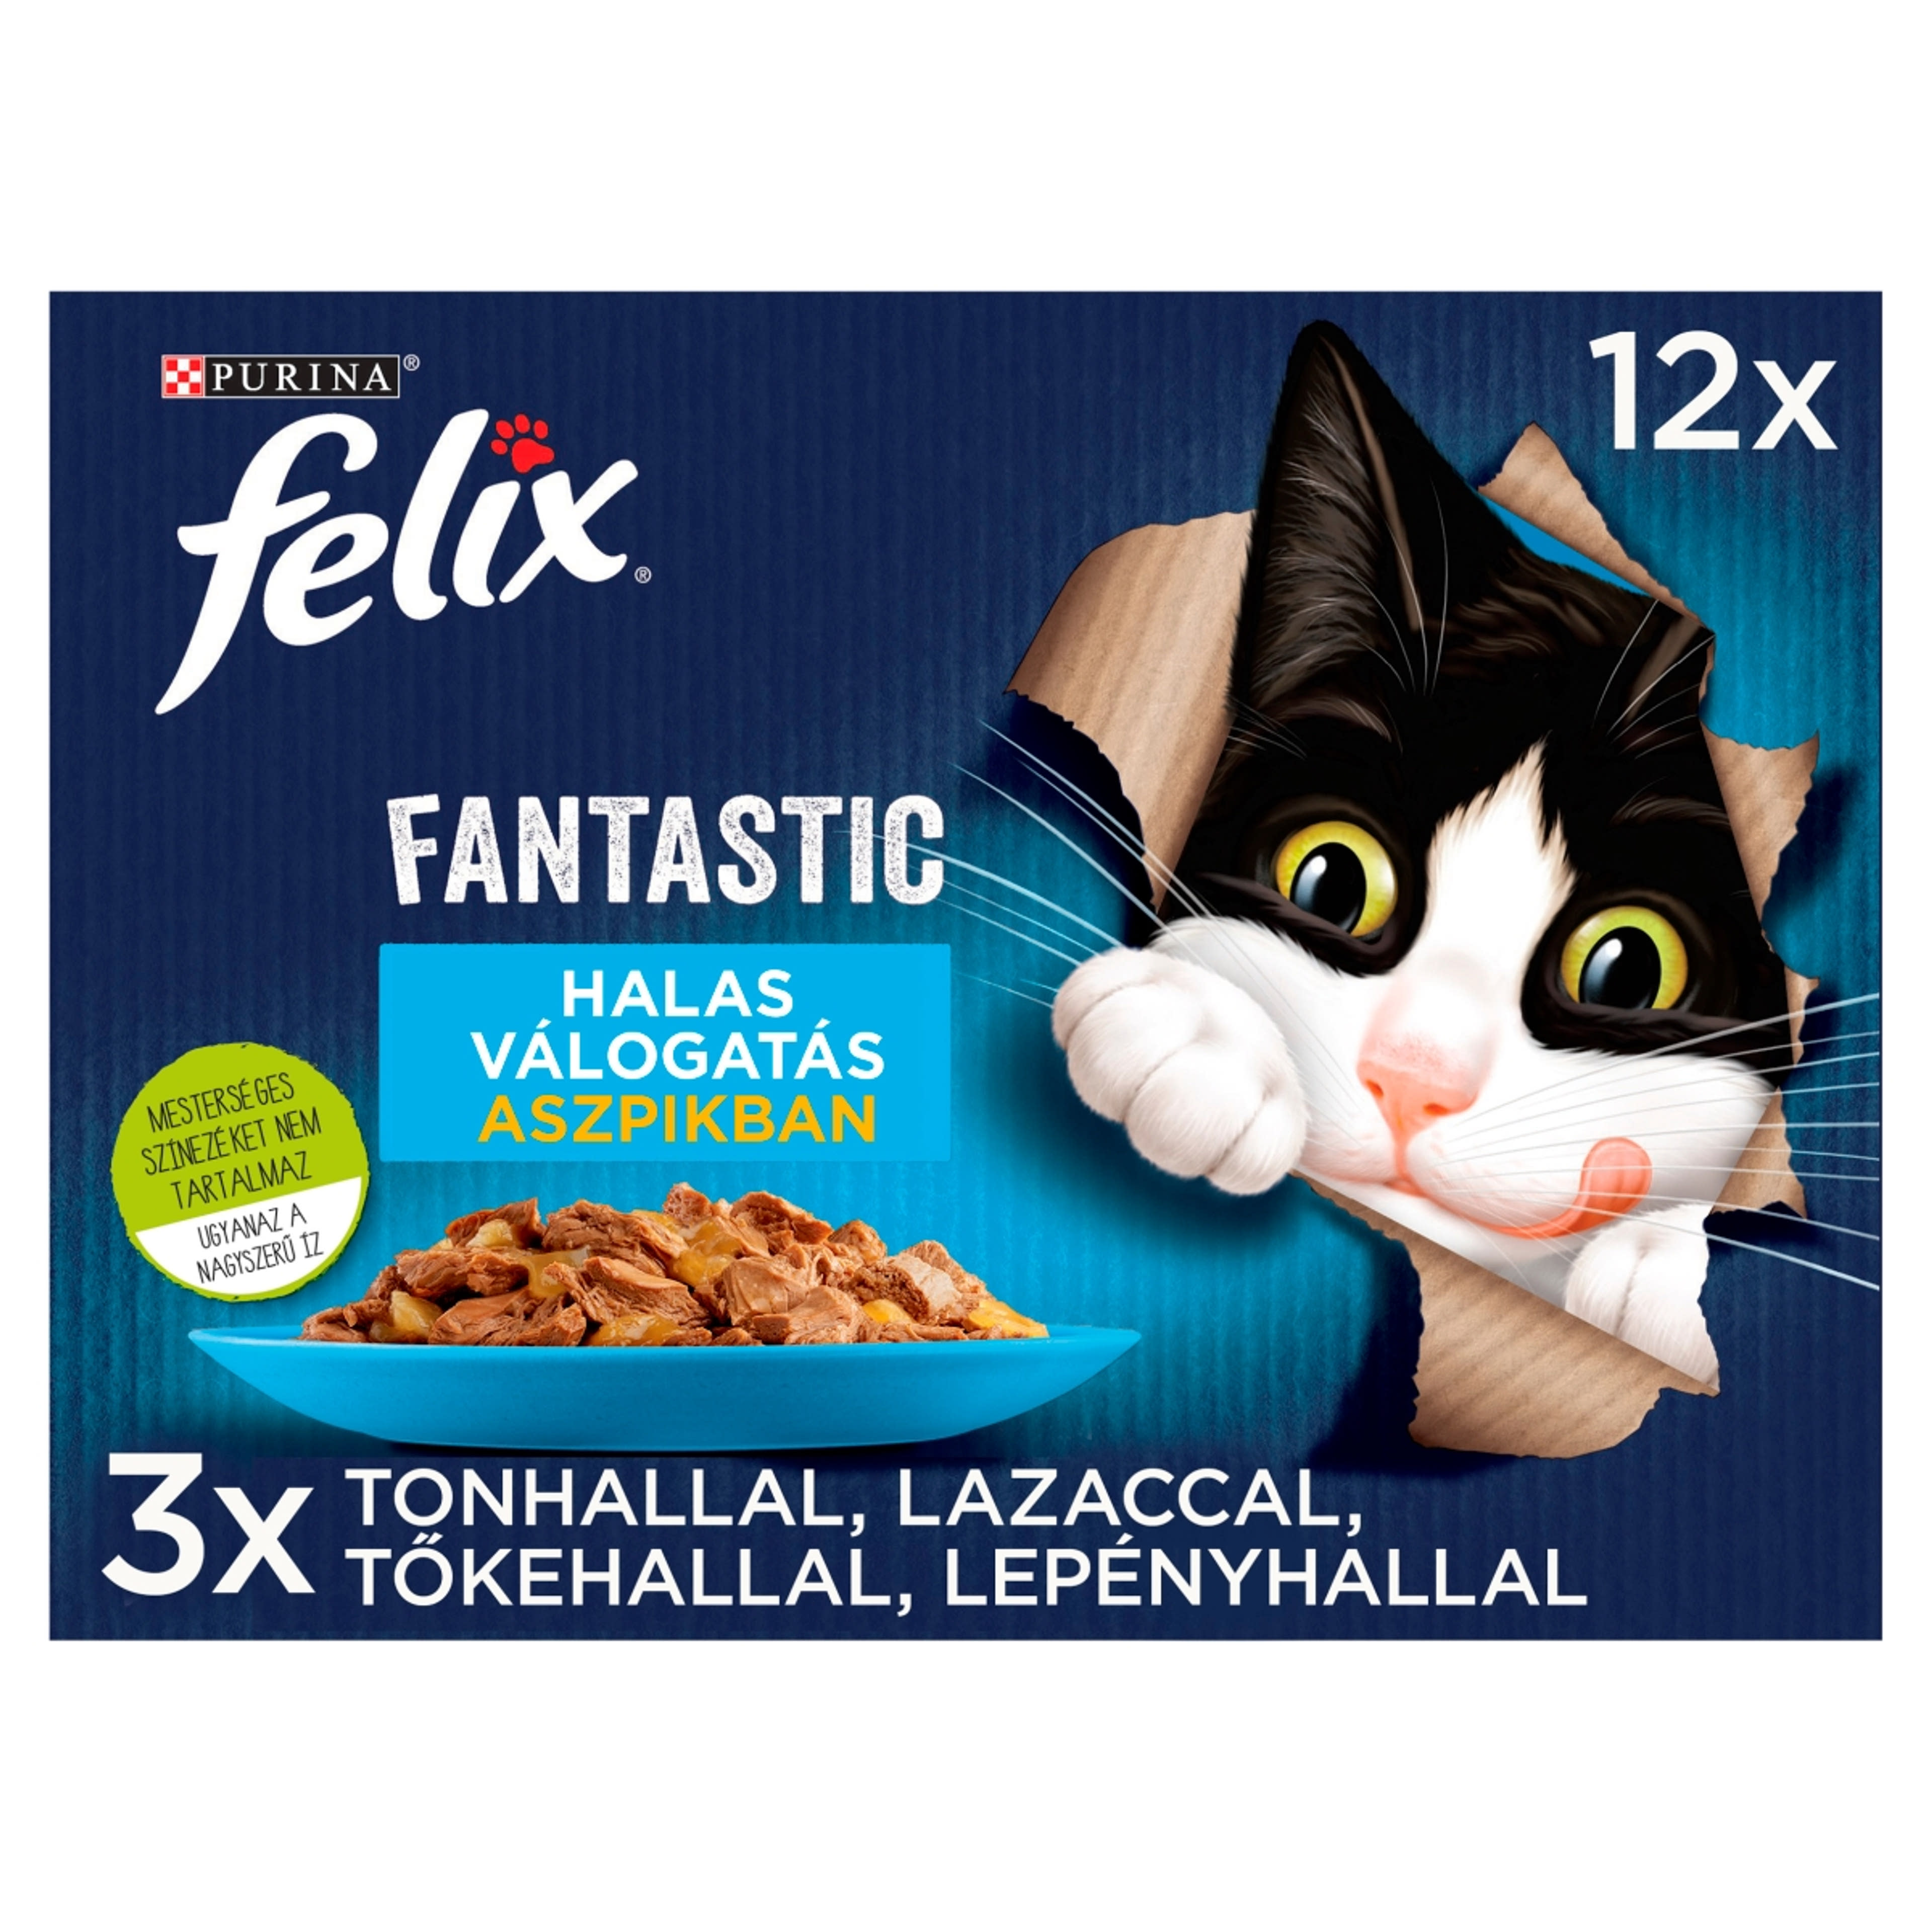 Felix Fantastic halas válogatás aszpikban, nedves macskaeledel (12 x 85 g) -  1020 g-2